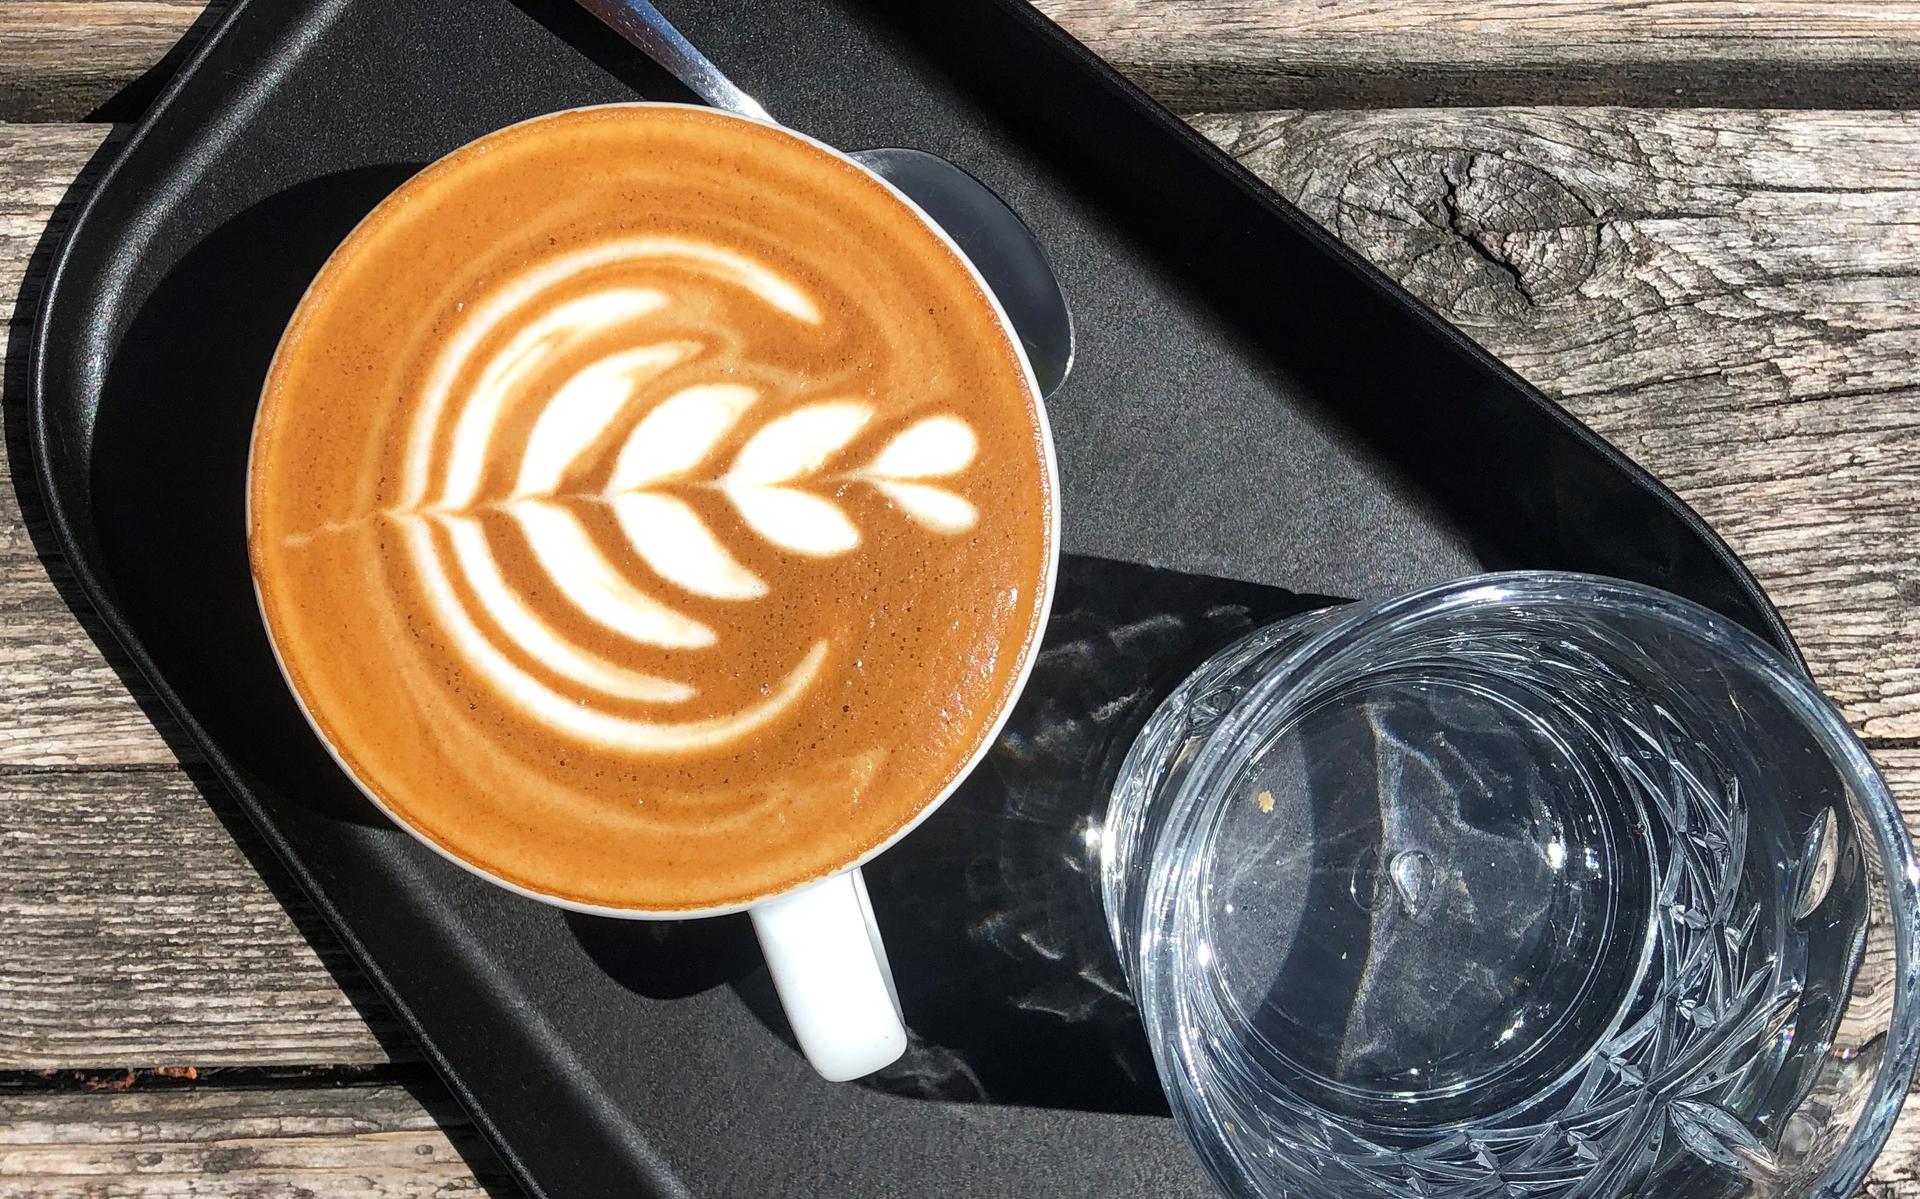 La start-up Lelystad OVDesign utilise le marc de café comme matière première pour les produits en plastique